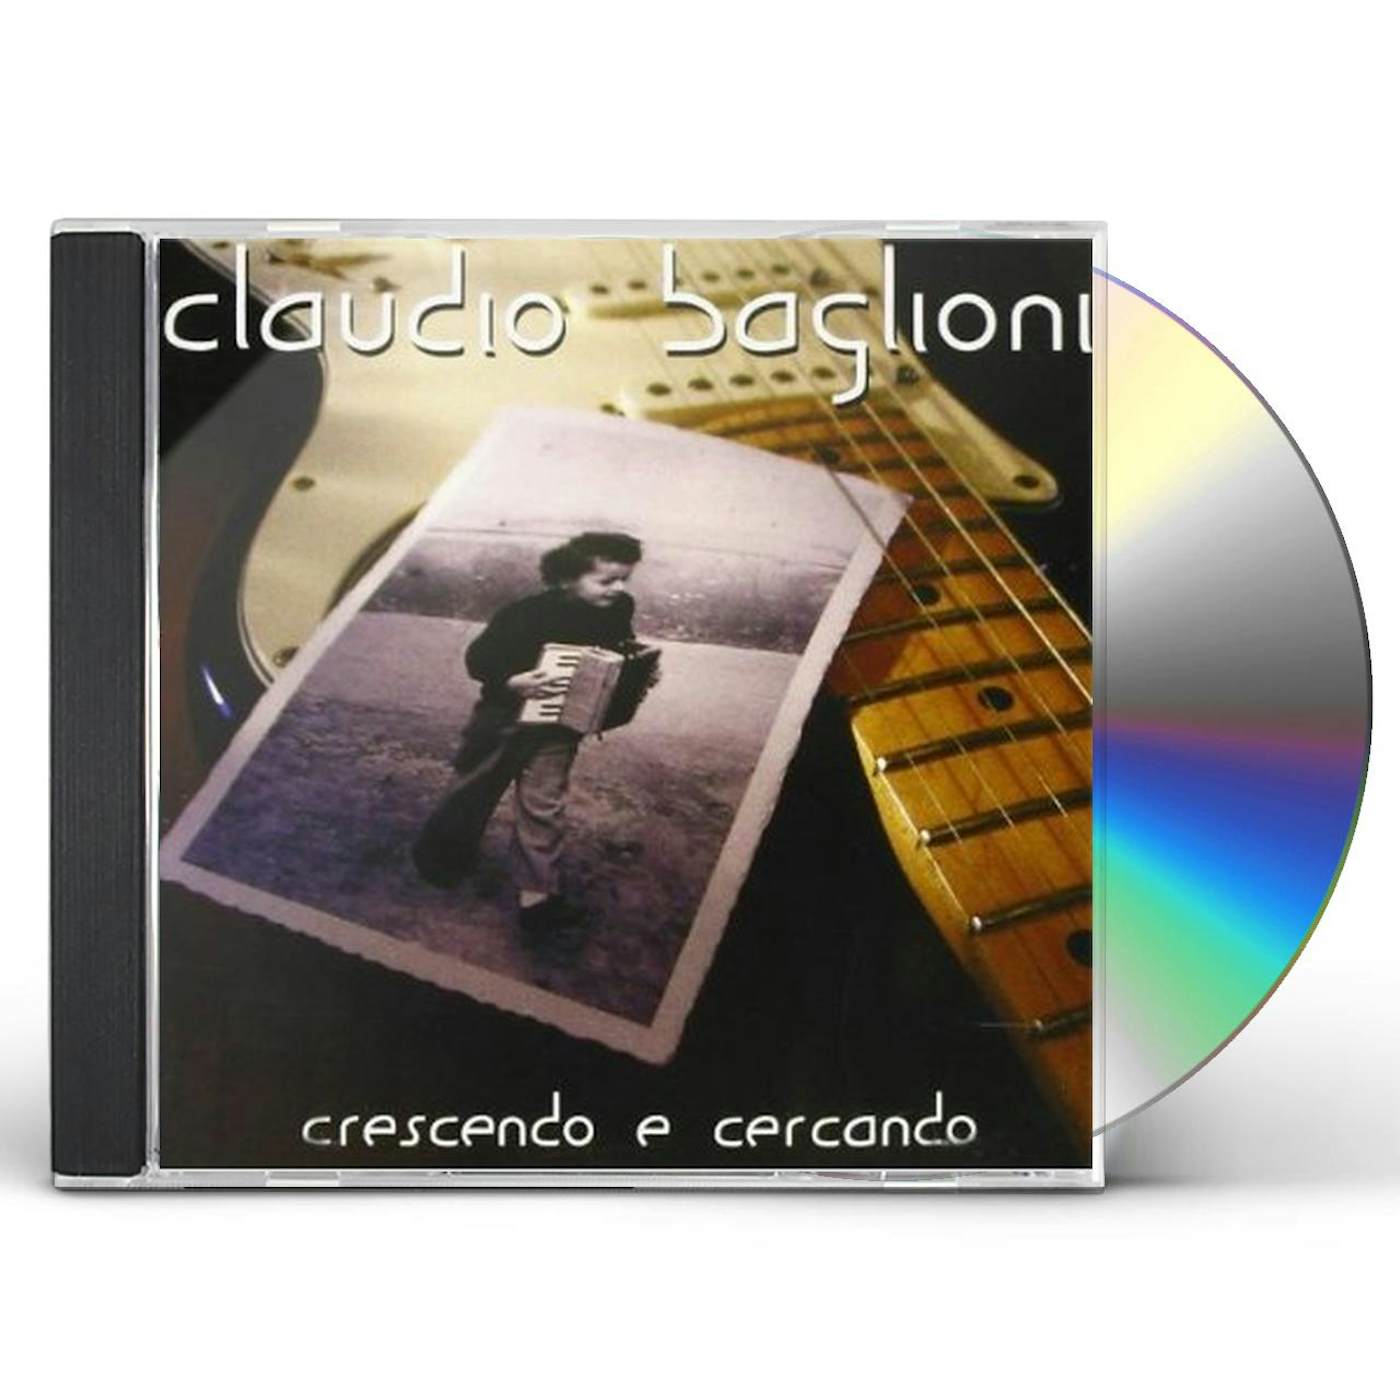 Claudio Baglioni CRESCENDO E CERCANDO CD